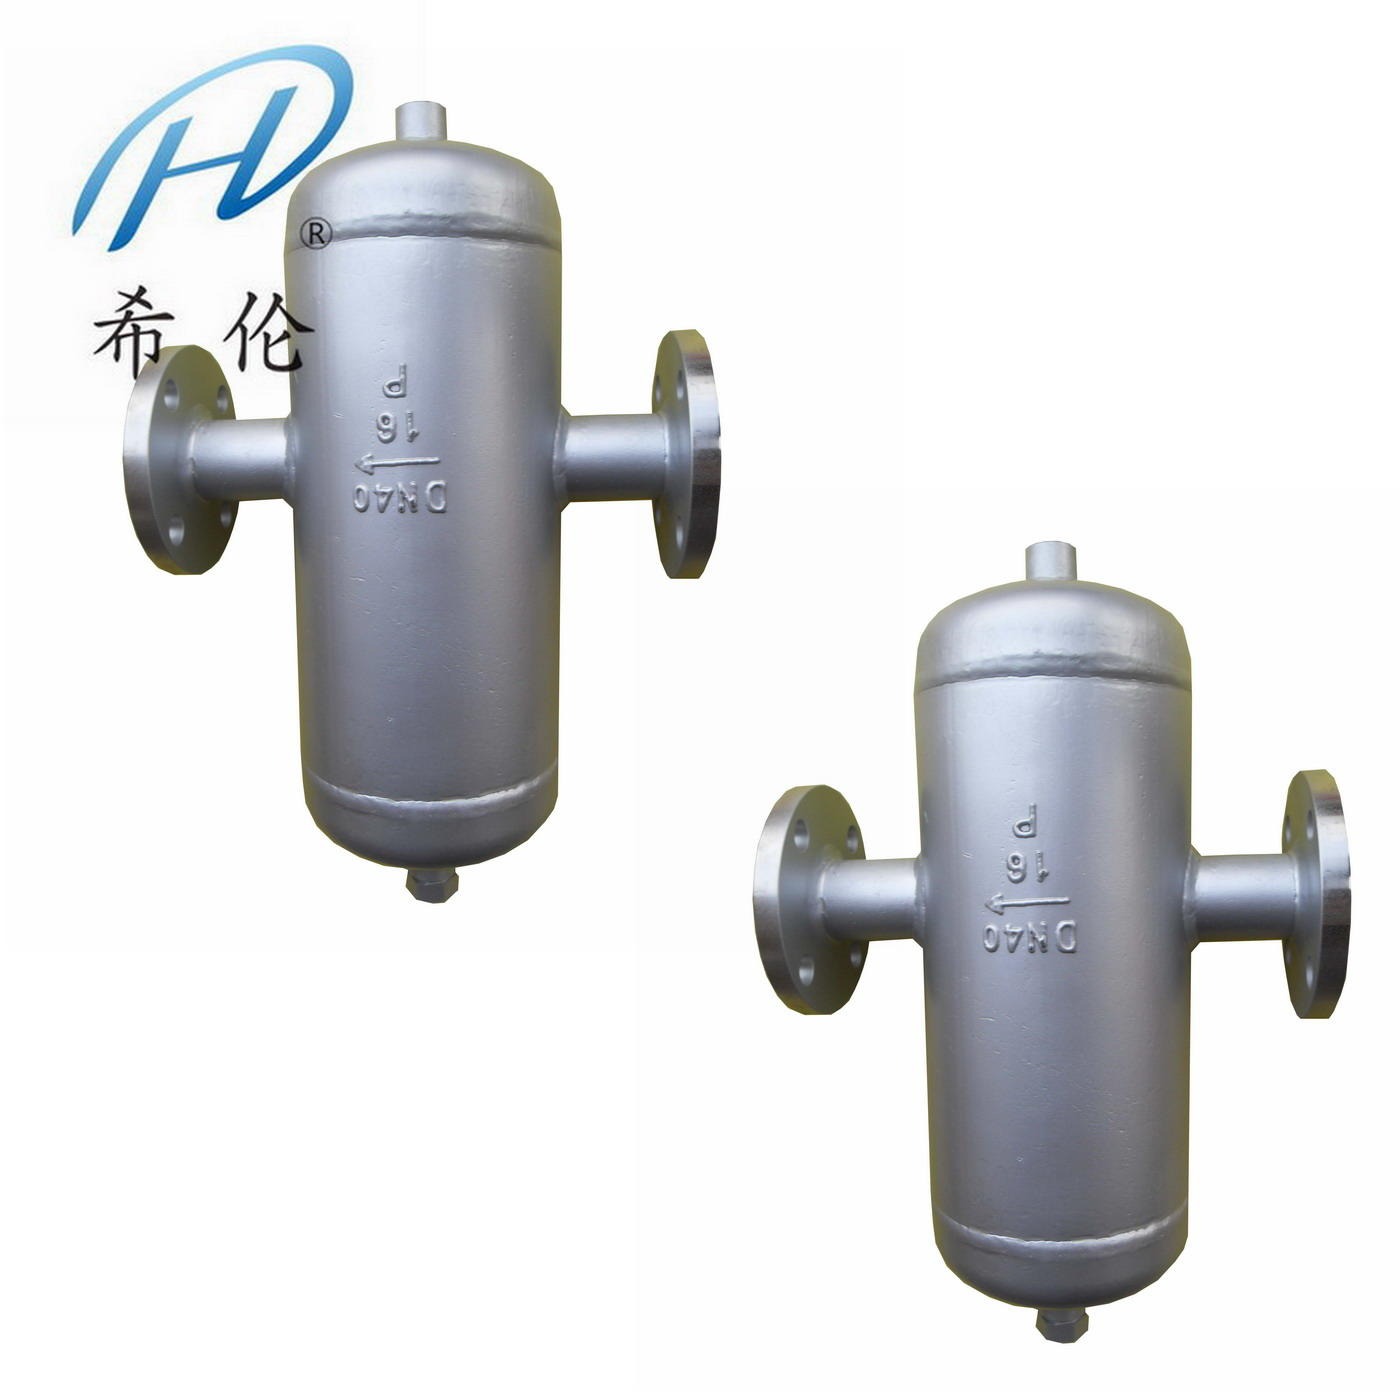 挡板式汽水分离器 蒸汽汽水分离器 汽水分离器 油水分离器 不锈钢汽水分离器图片